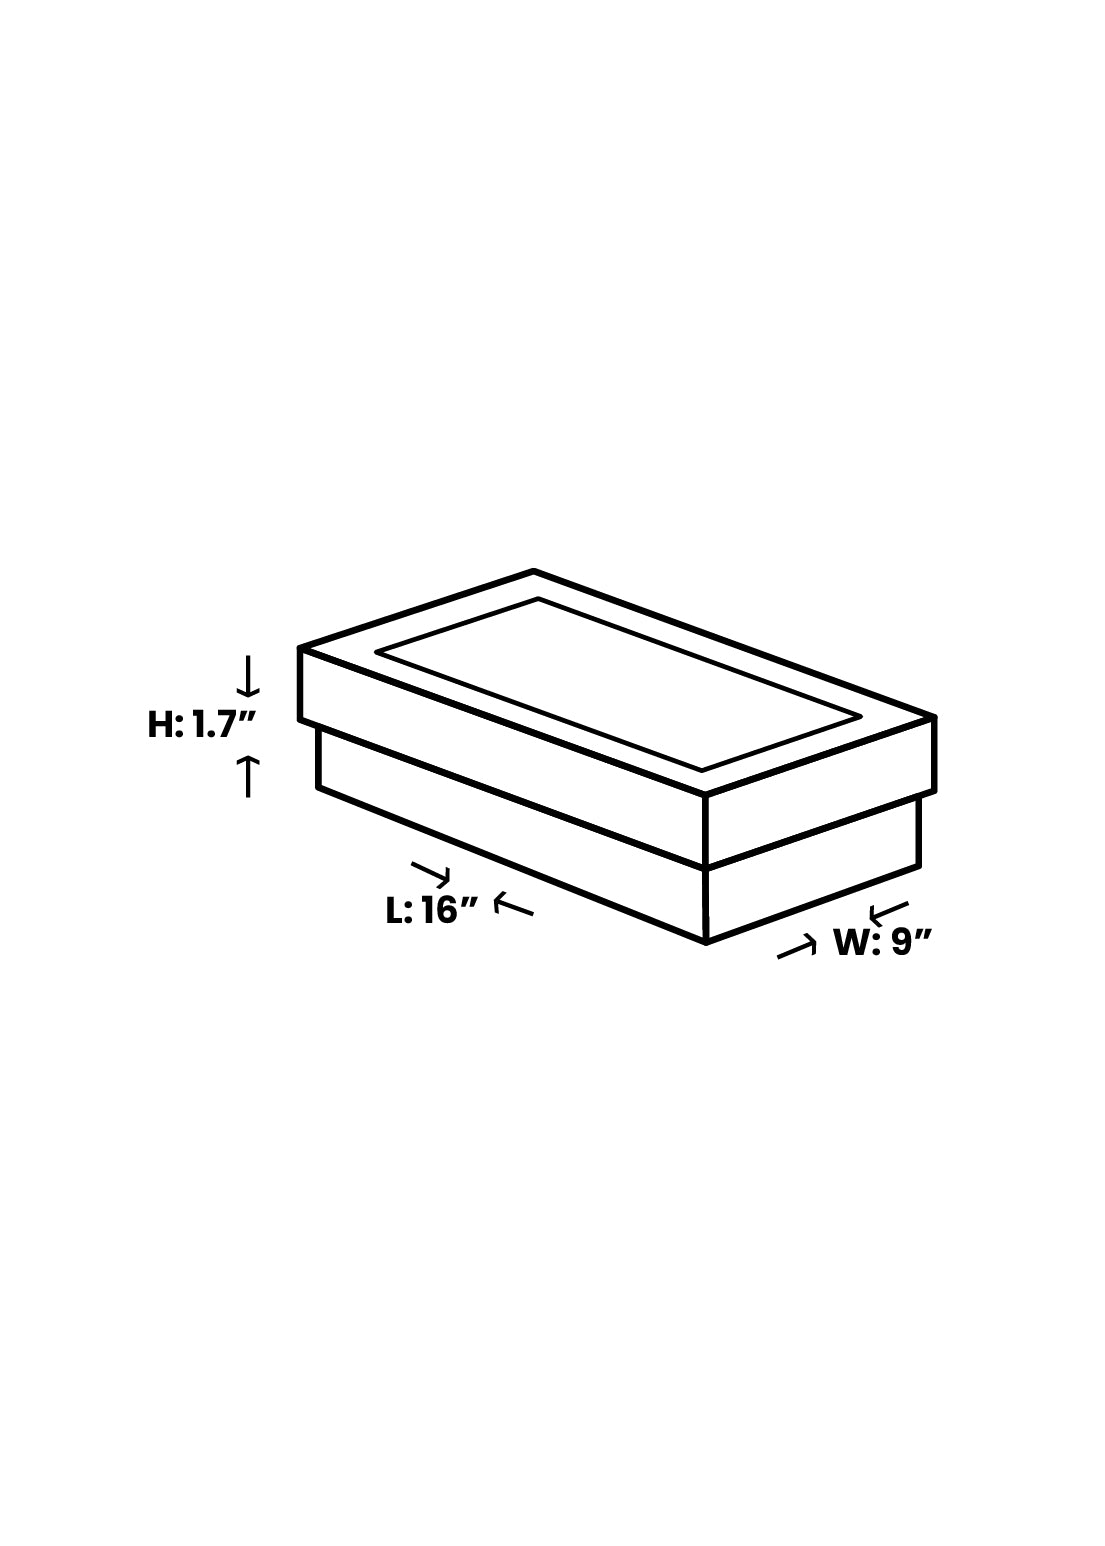 Plain Black Design Box for Packing